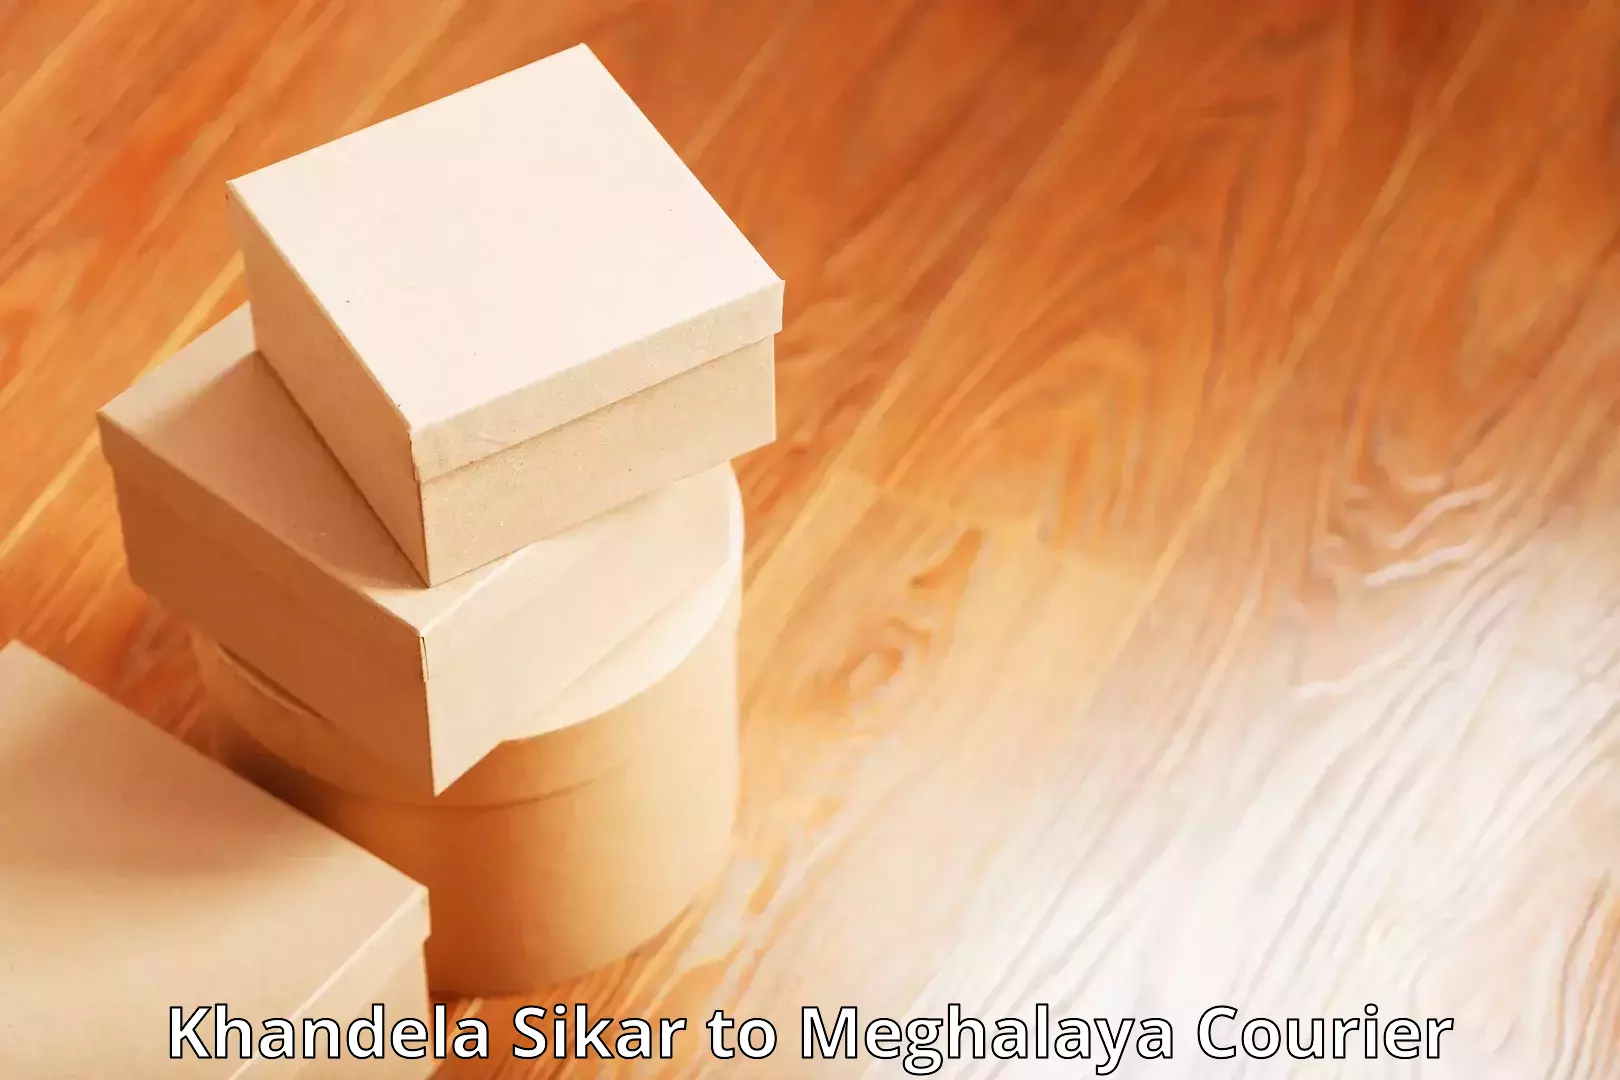 Bulk courier orders in Khandela Sikar to Meghalaya